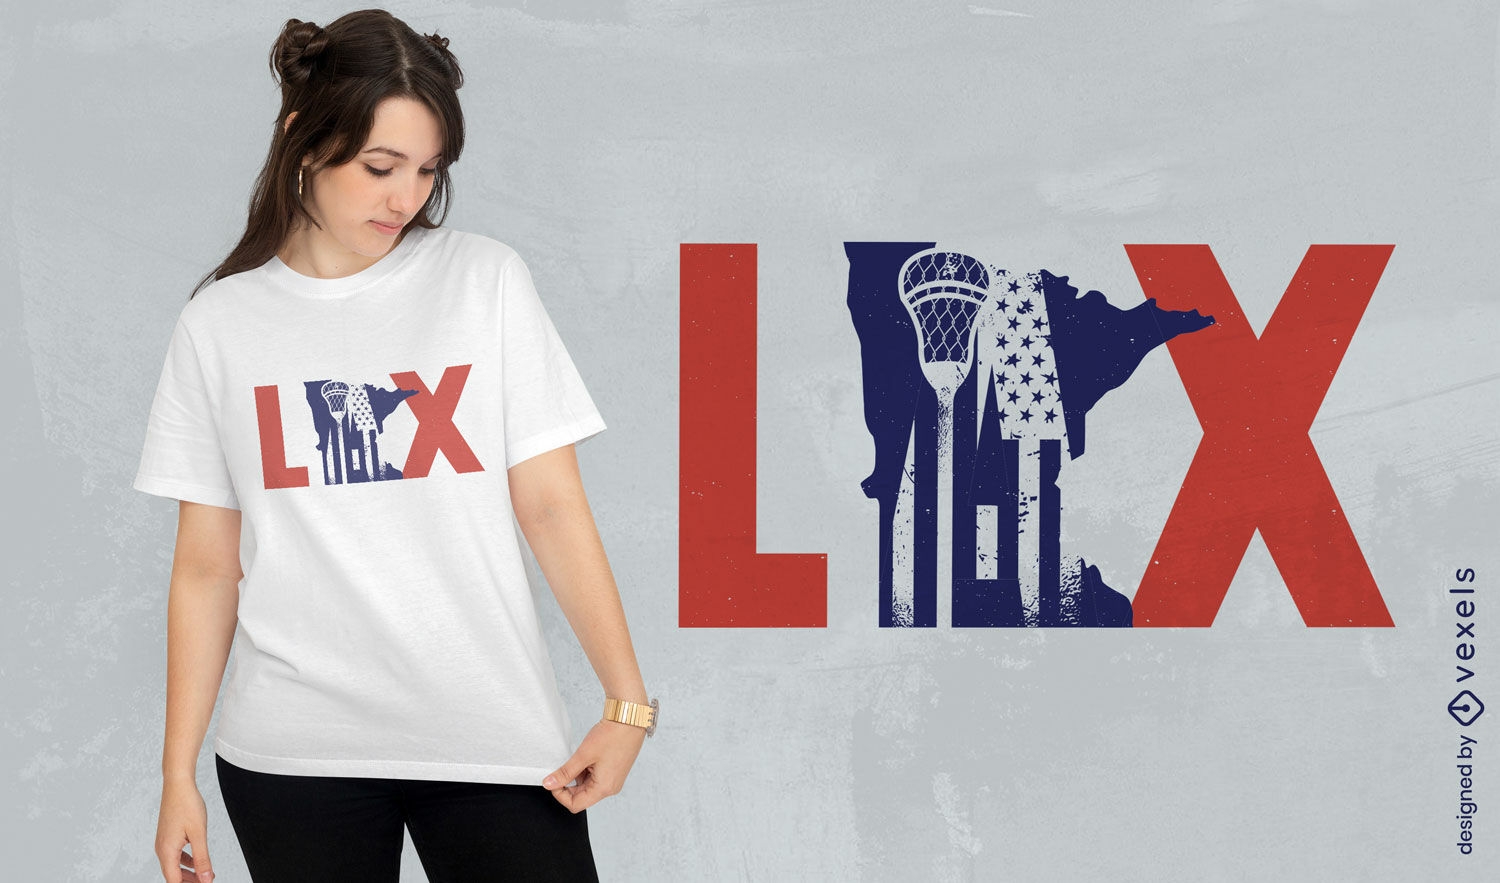 Diseño de camiseta de cita deportiva de lacrosse.